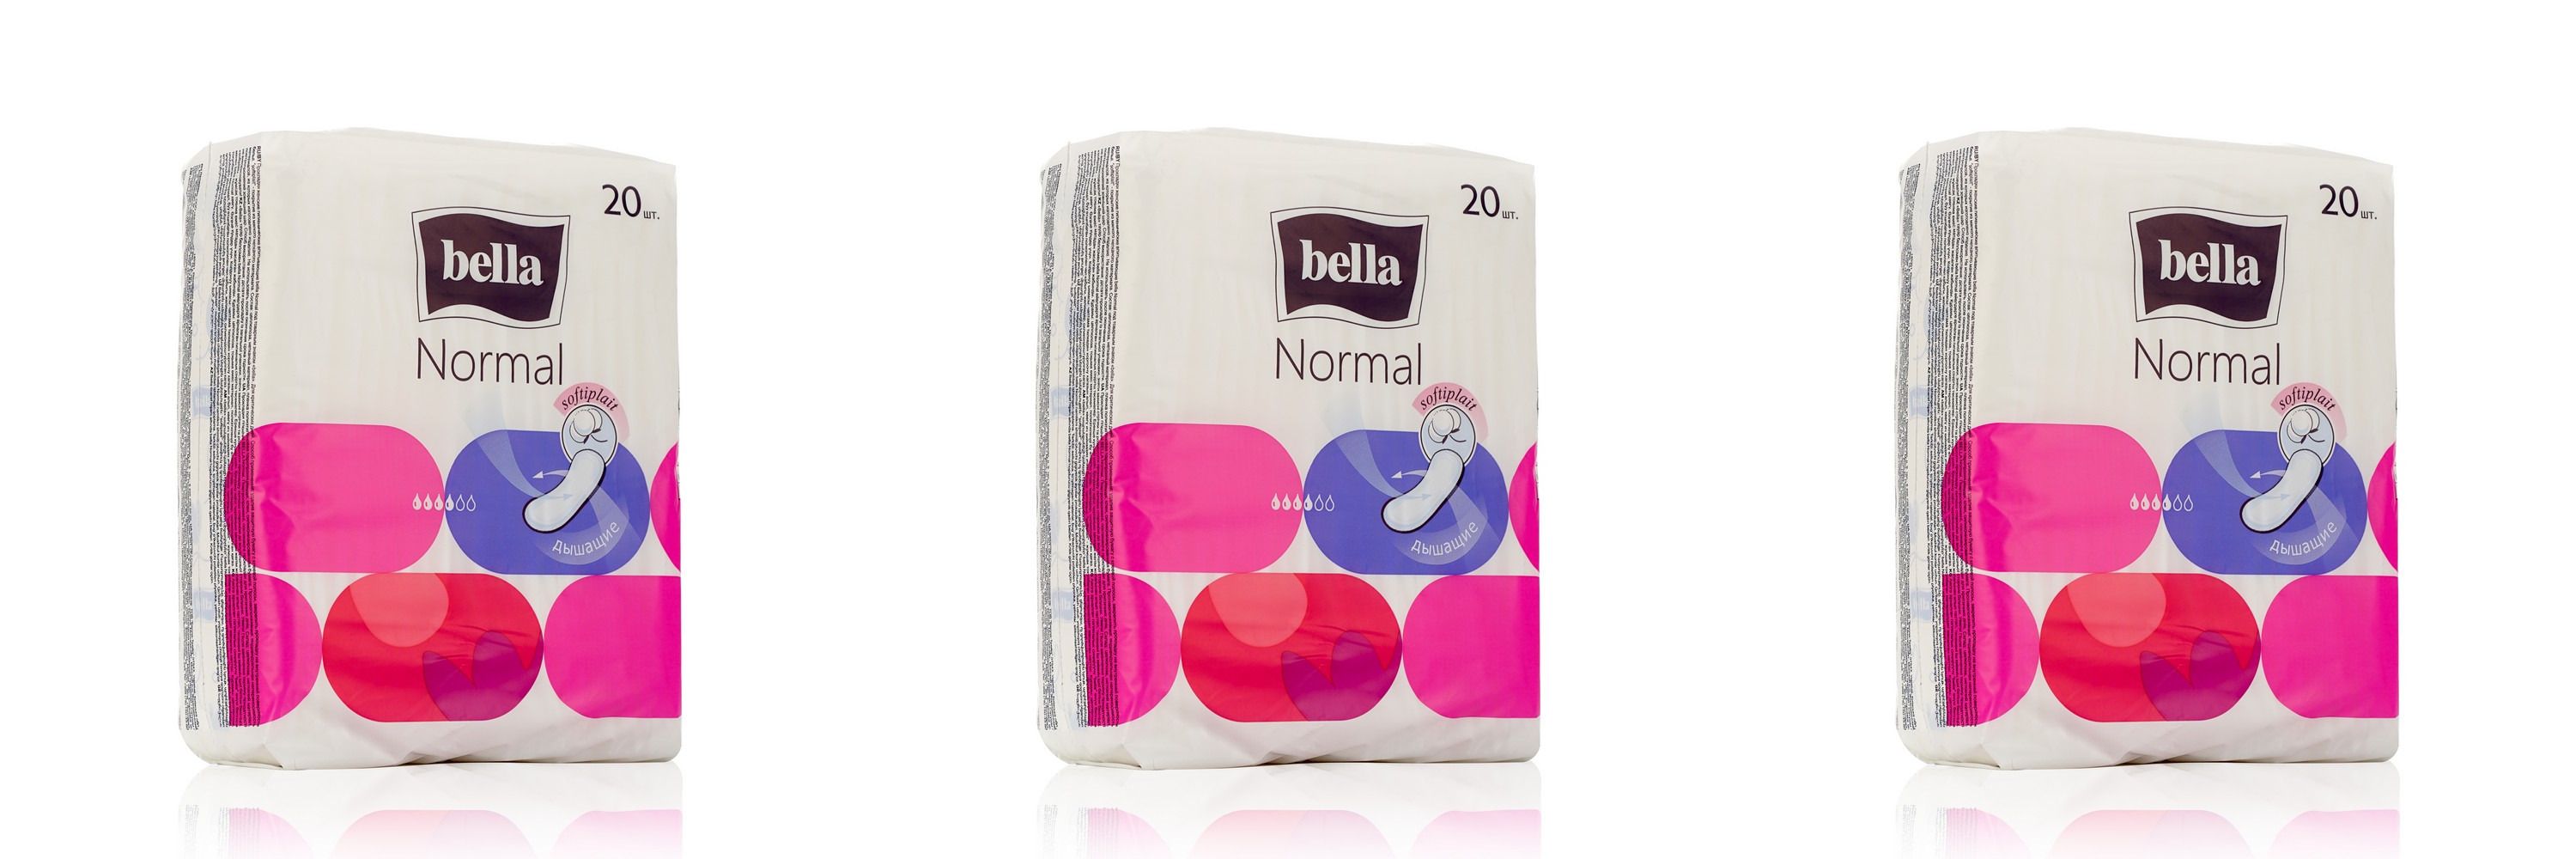 Прокладки Bella гигиенические Normal Softiplait Air 20шт 3 уп прокладки ежедневные гигиенические ультратонкие normal panty intima bella белла 30шт